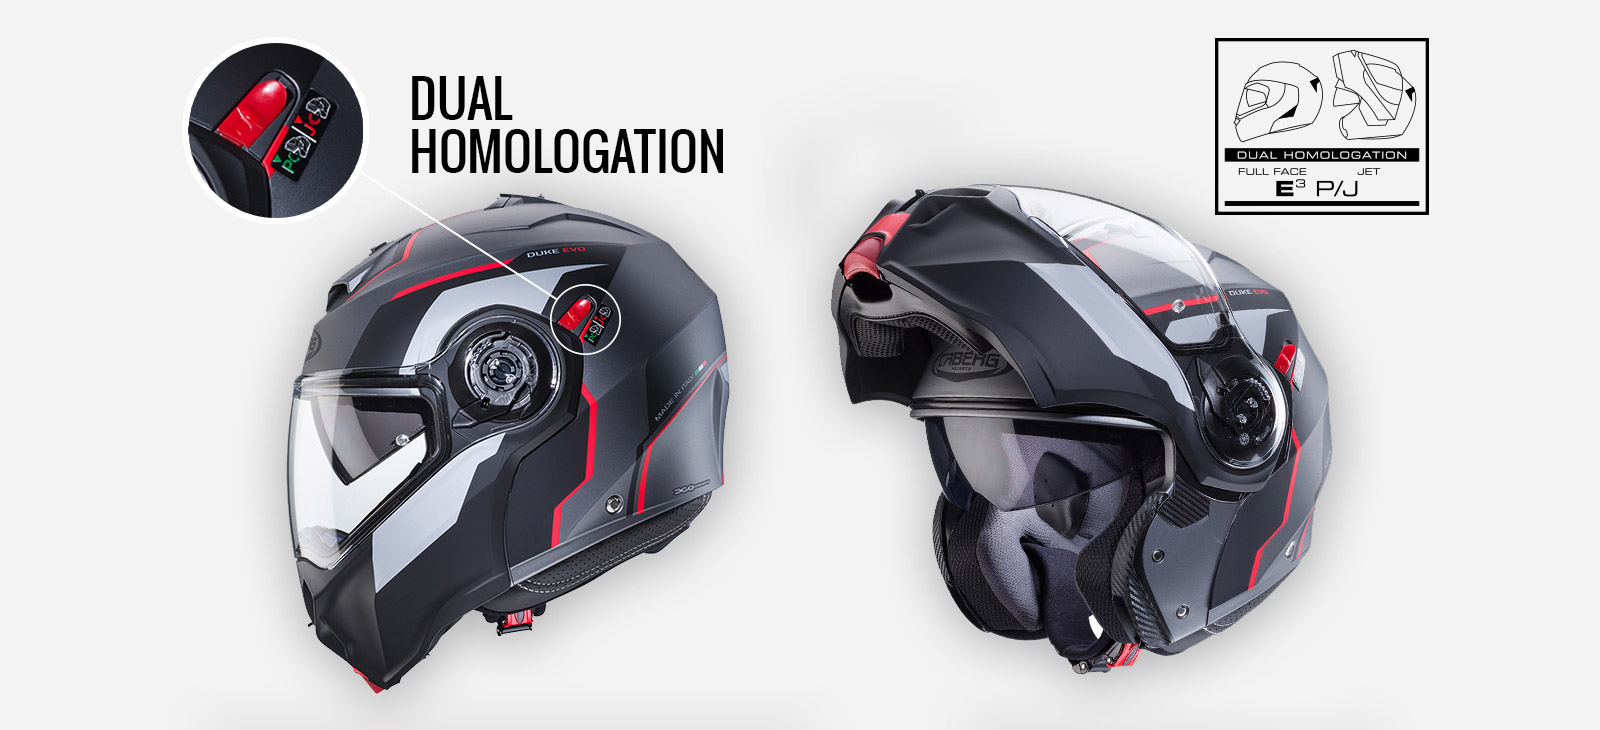 Helmet's features